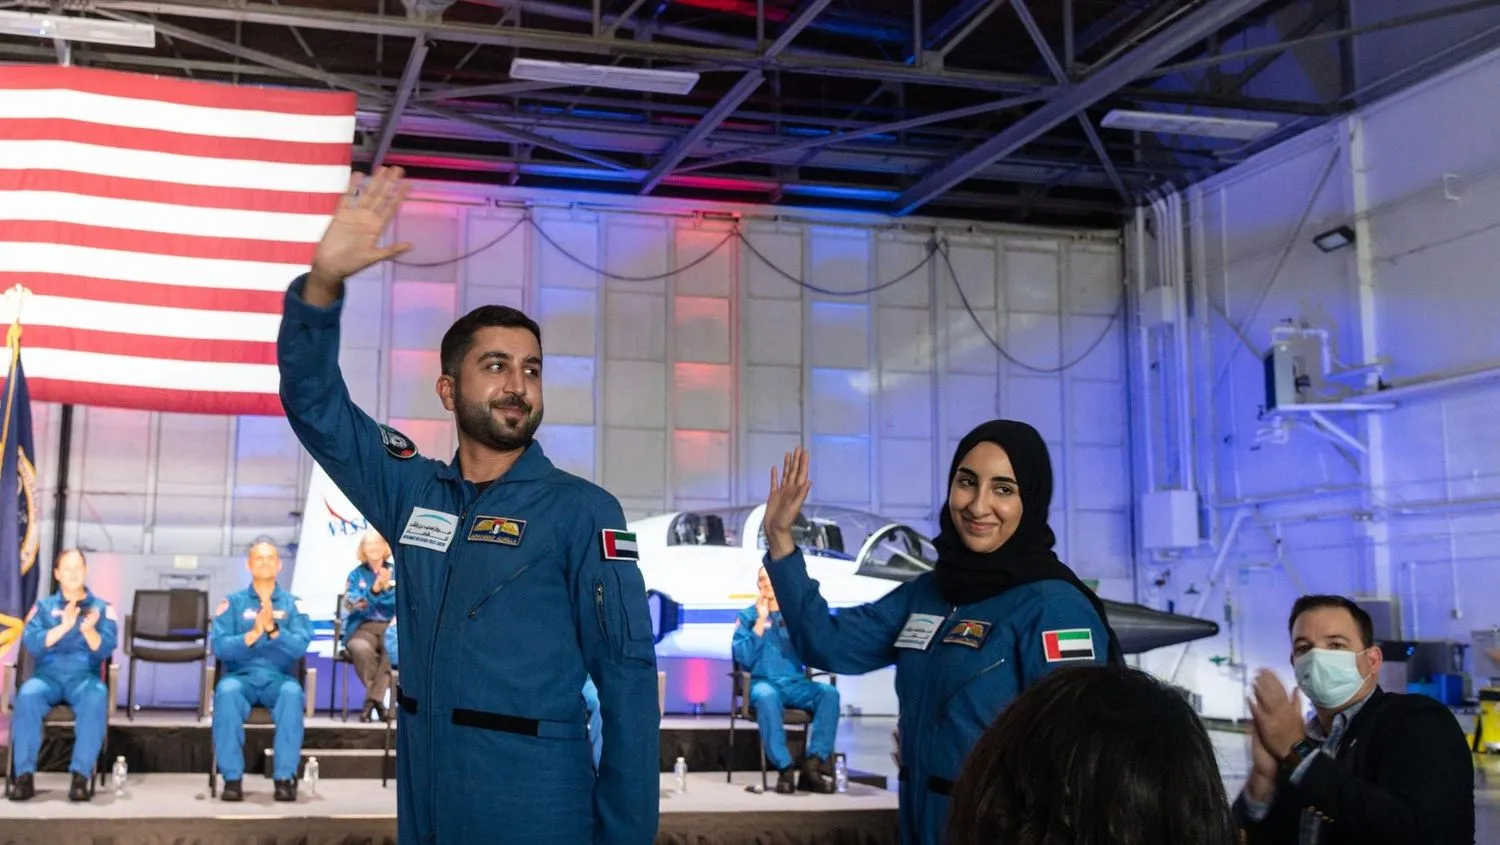 zwei astronautenkandidaten winken in fluganzügen vor einer us-flagge und einem t-38 jet. auf der bühne dahinter applaudieren sitzende astronautenkandidaten